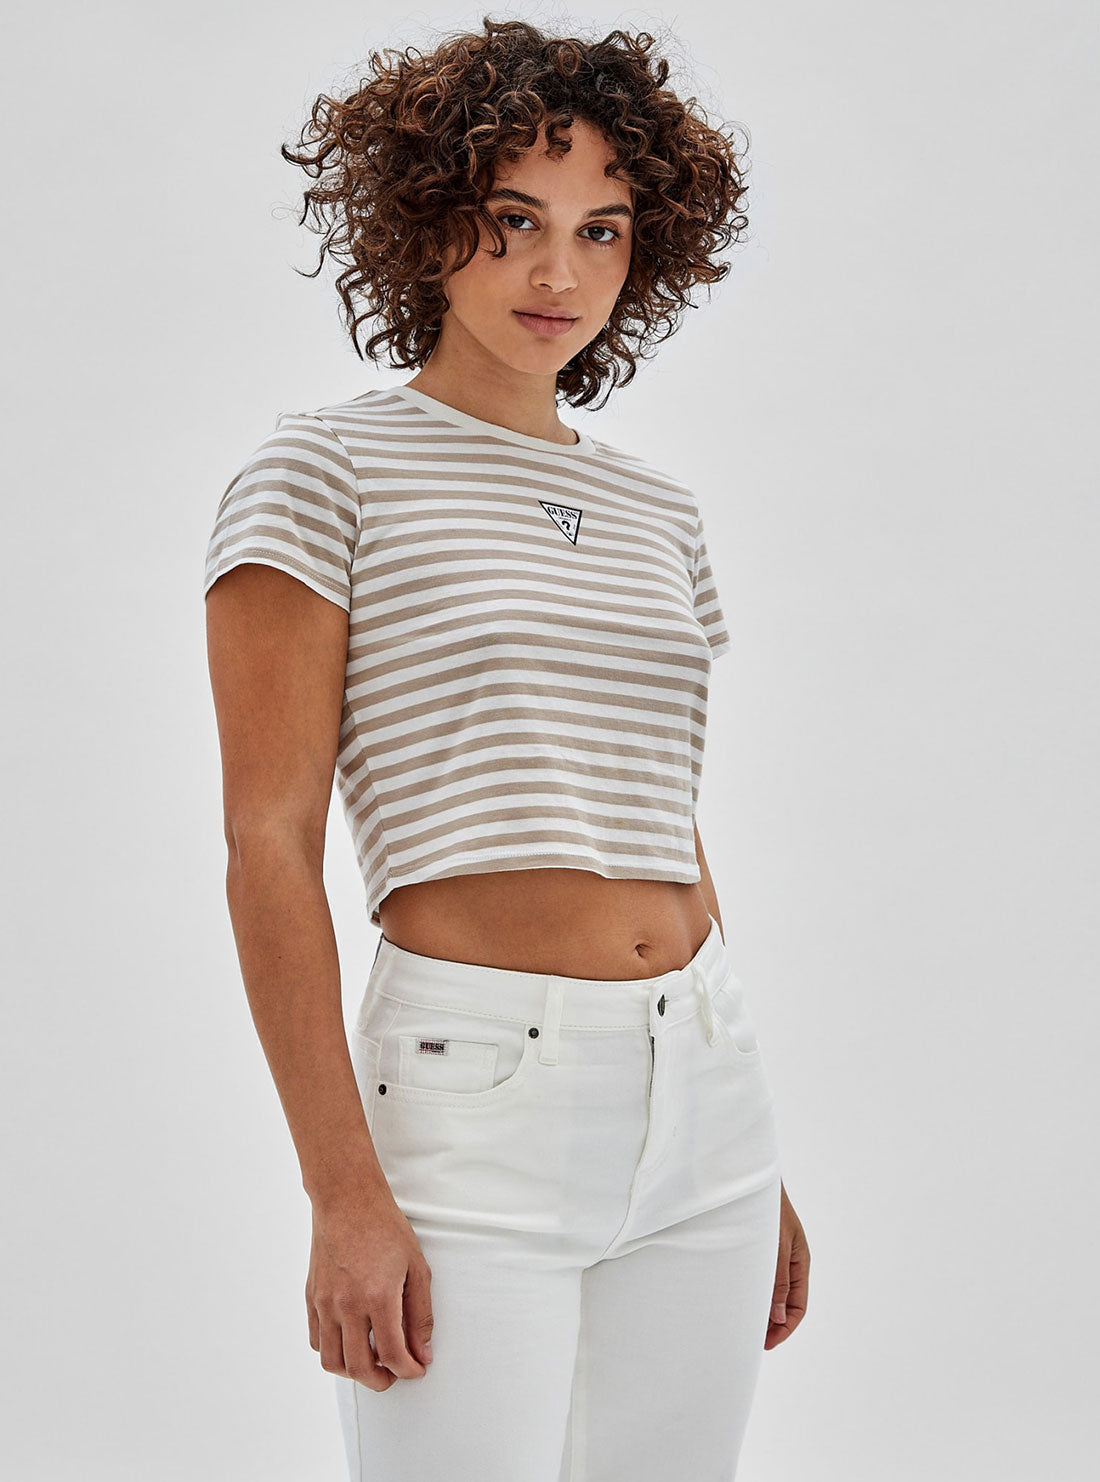 GUESS Women's Guess Originals White Multi Clara Striped Baby T-Shirt W3GI60KA0Q3 Side View